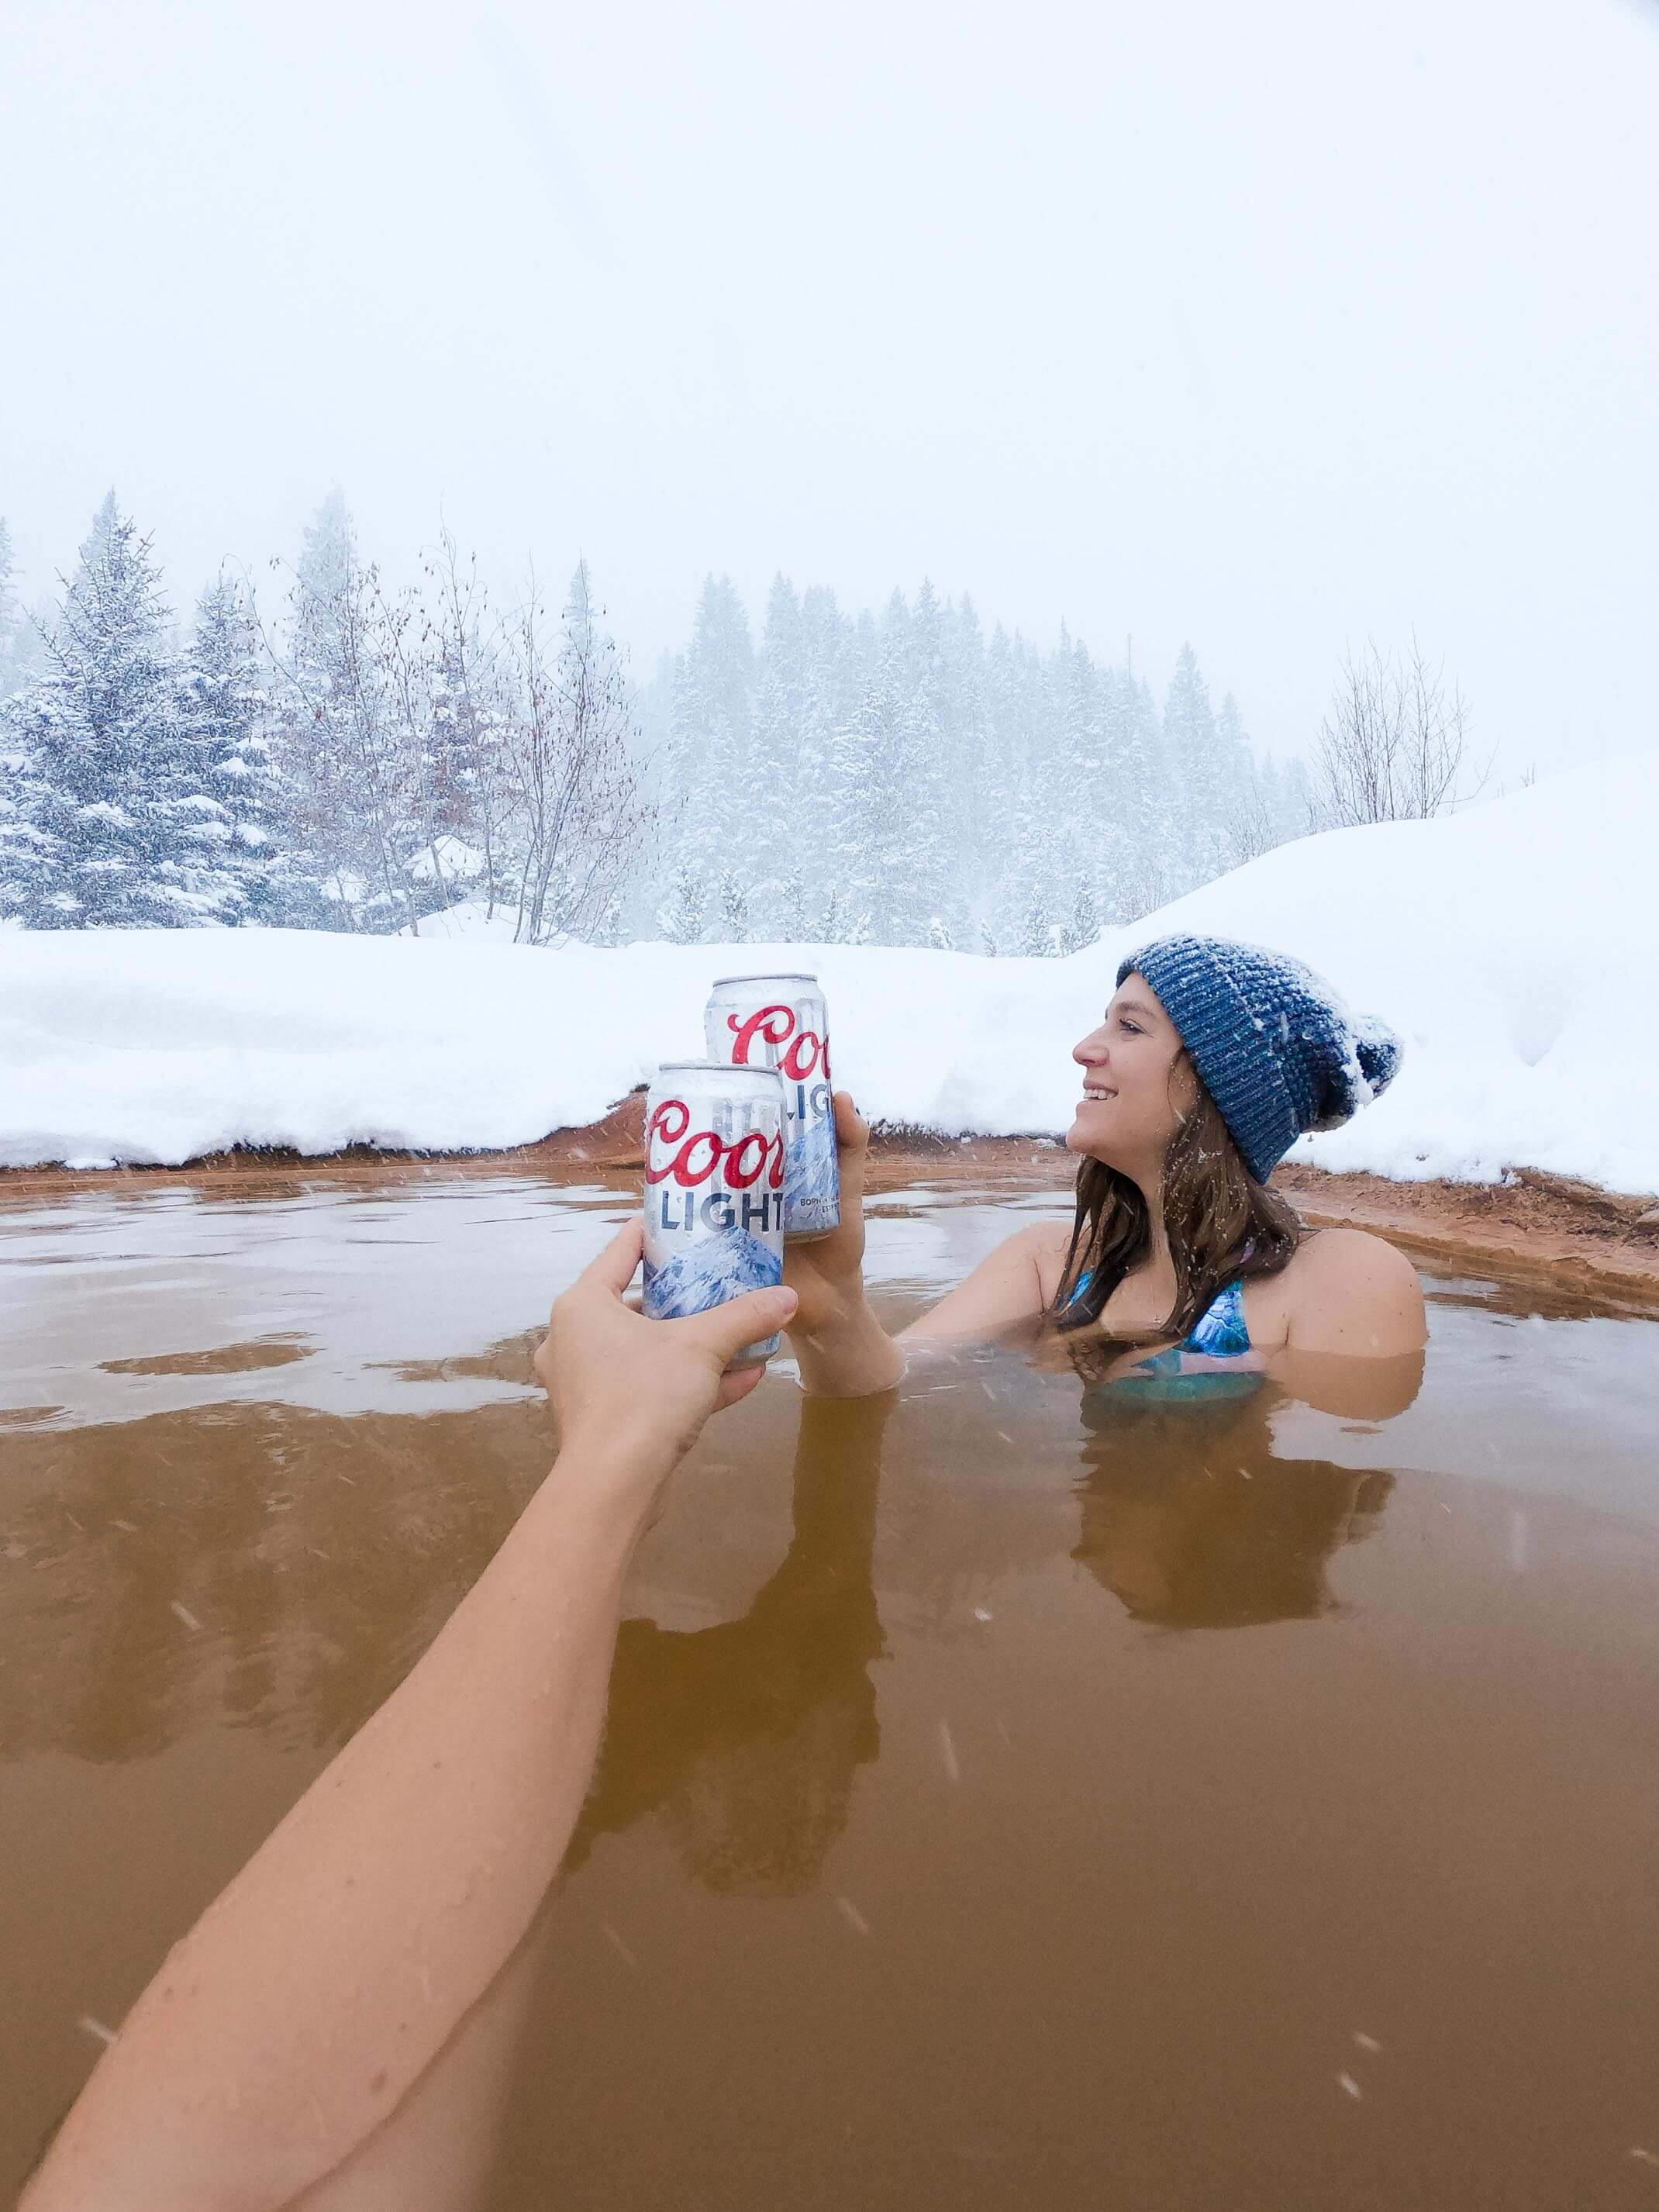 A winter escape to Dunton Hot Springs, Colorado